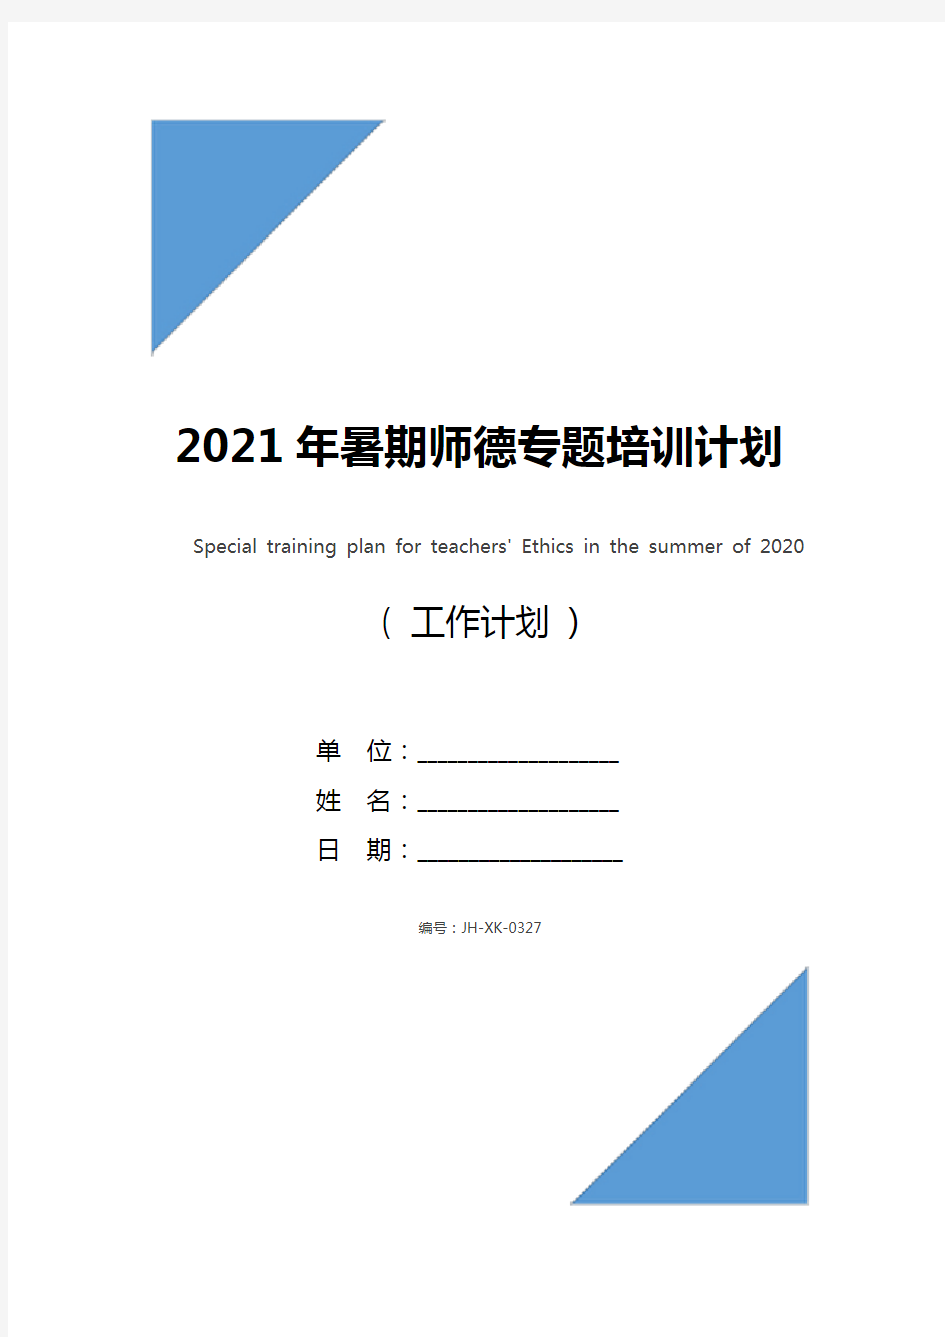 2021年暑期师德专题培训计划(最新版)